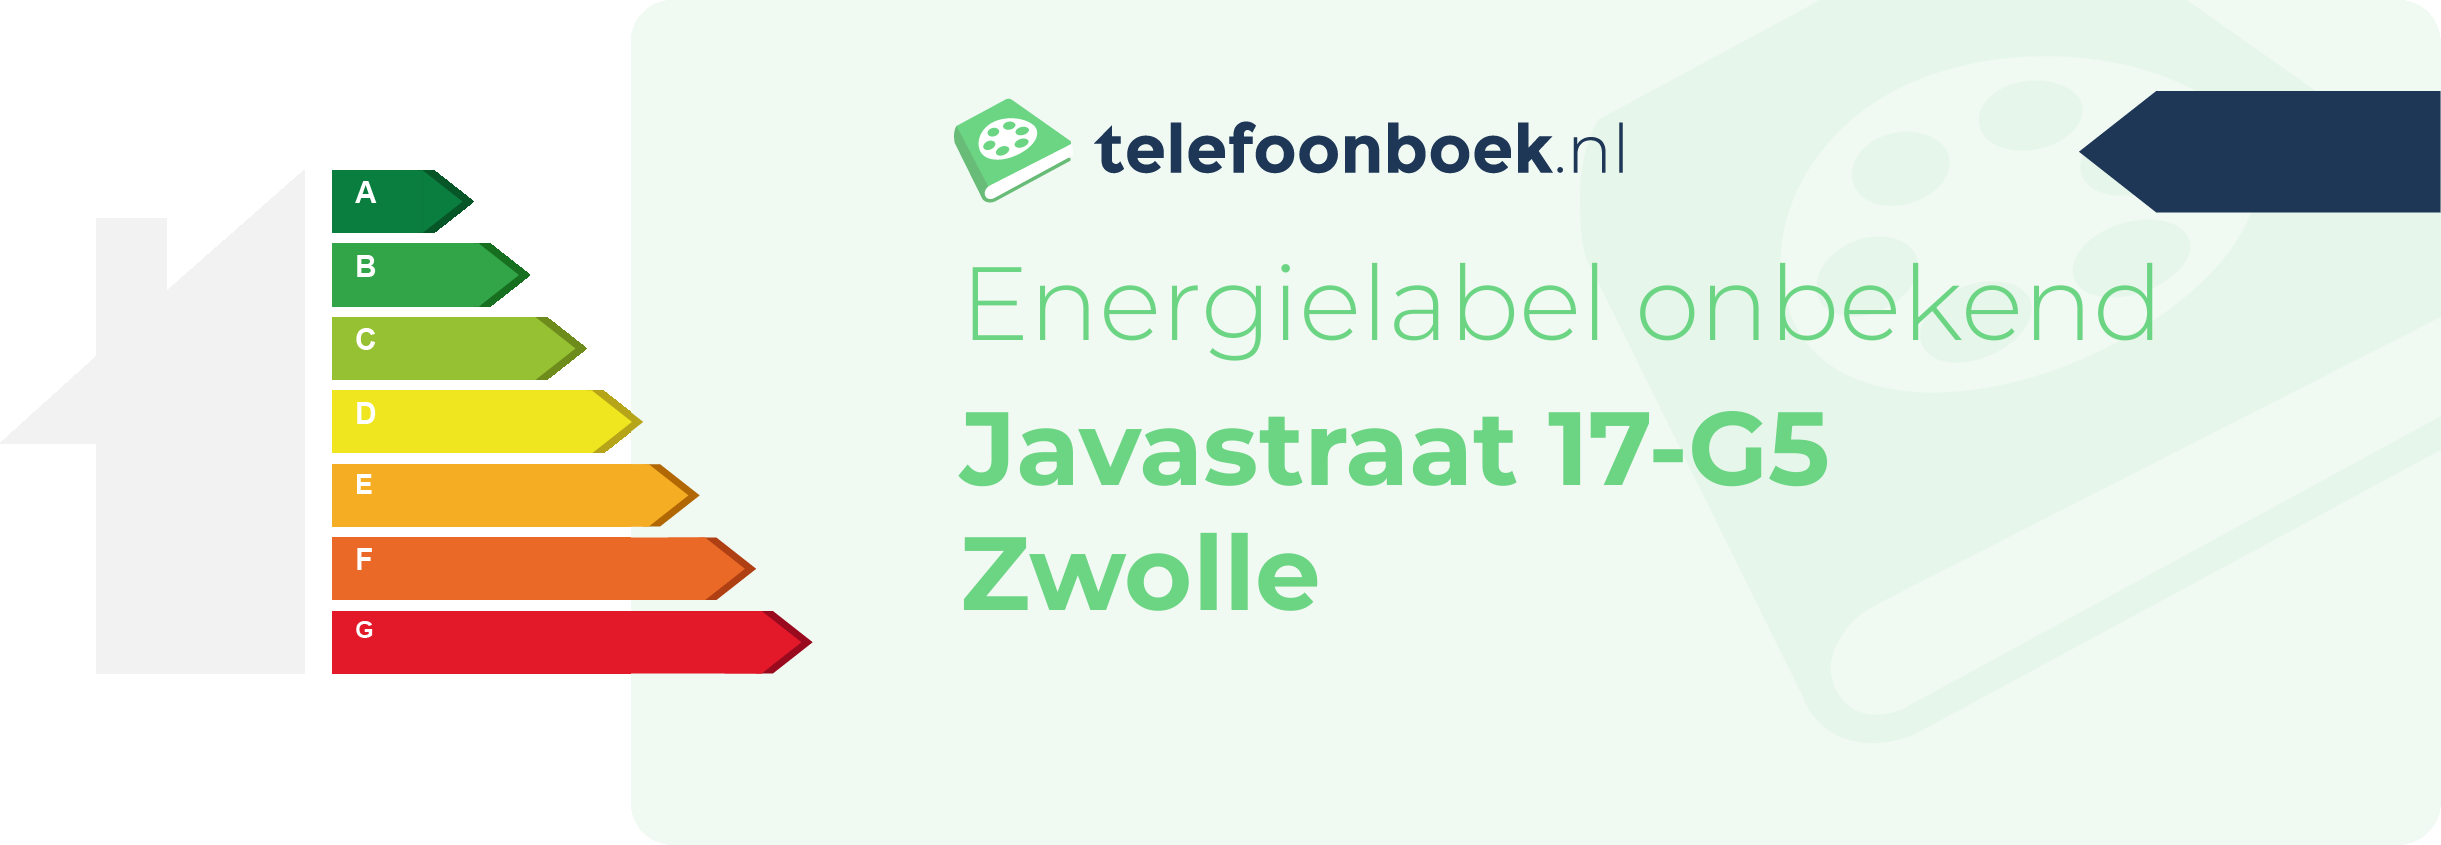 Energielabel Javastraat 17-G5 Zwolle